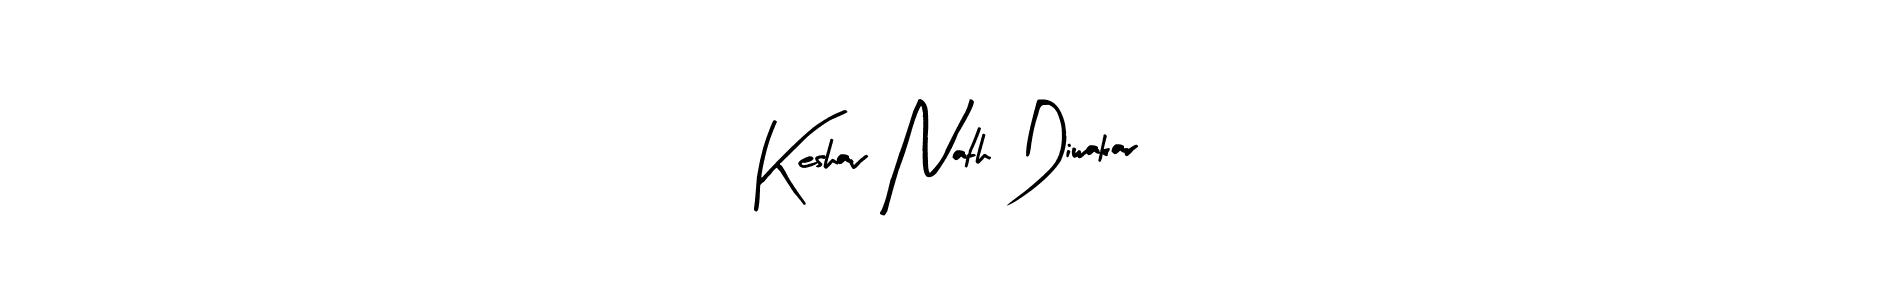 How to Draw Keshav Nath Diwakar signature style? Arty Signature is a latest design signature styles for name Keshav Nath Diwakar. Keshav Nath Diwakar signature style 8 images and pictures png